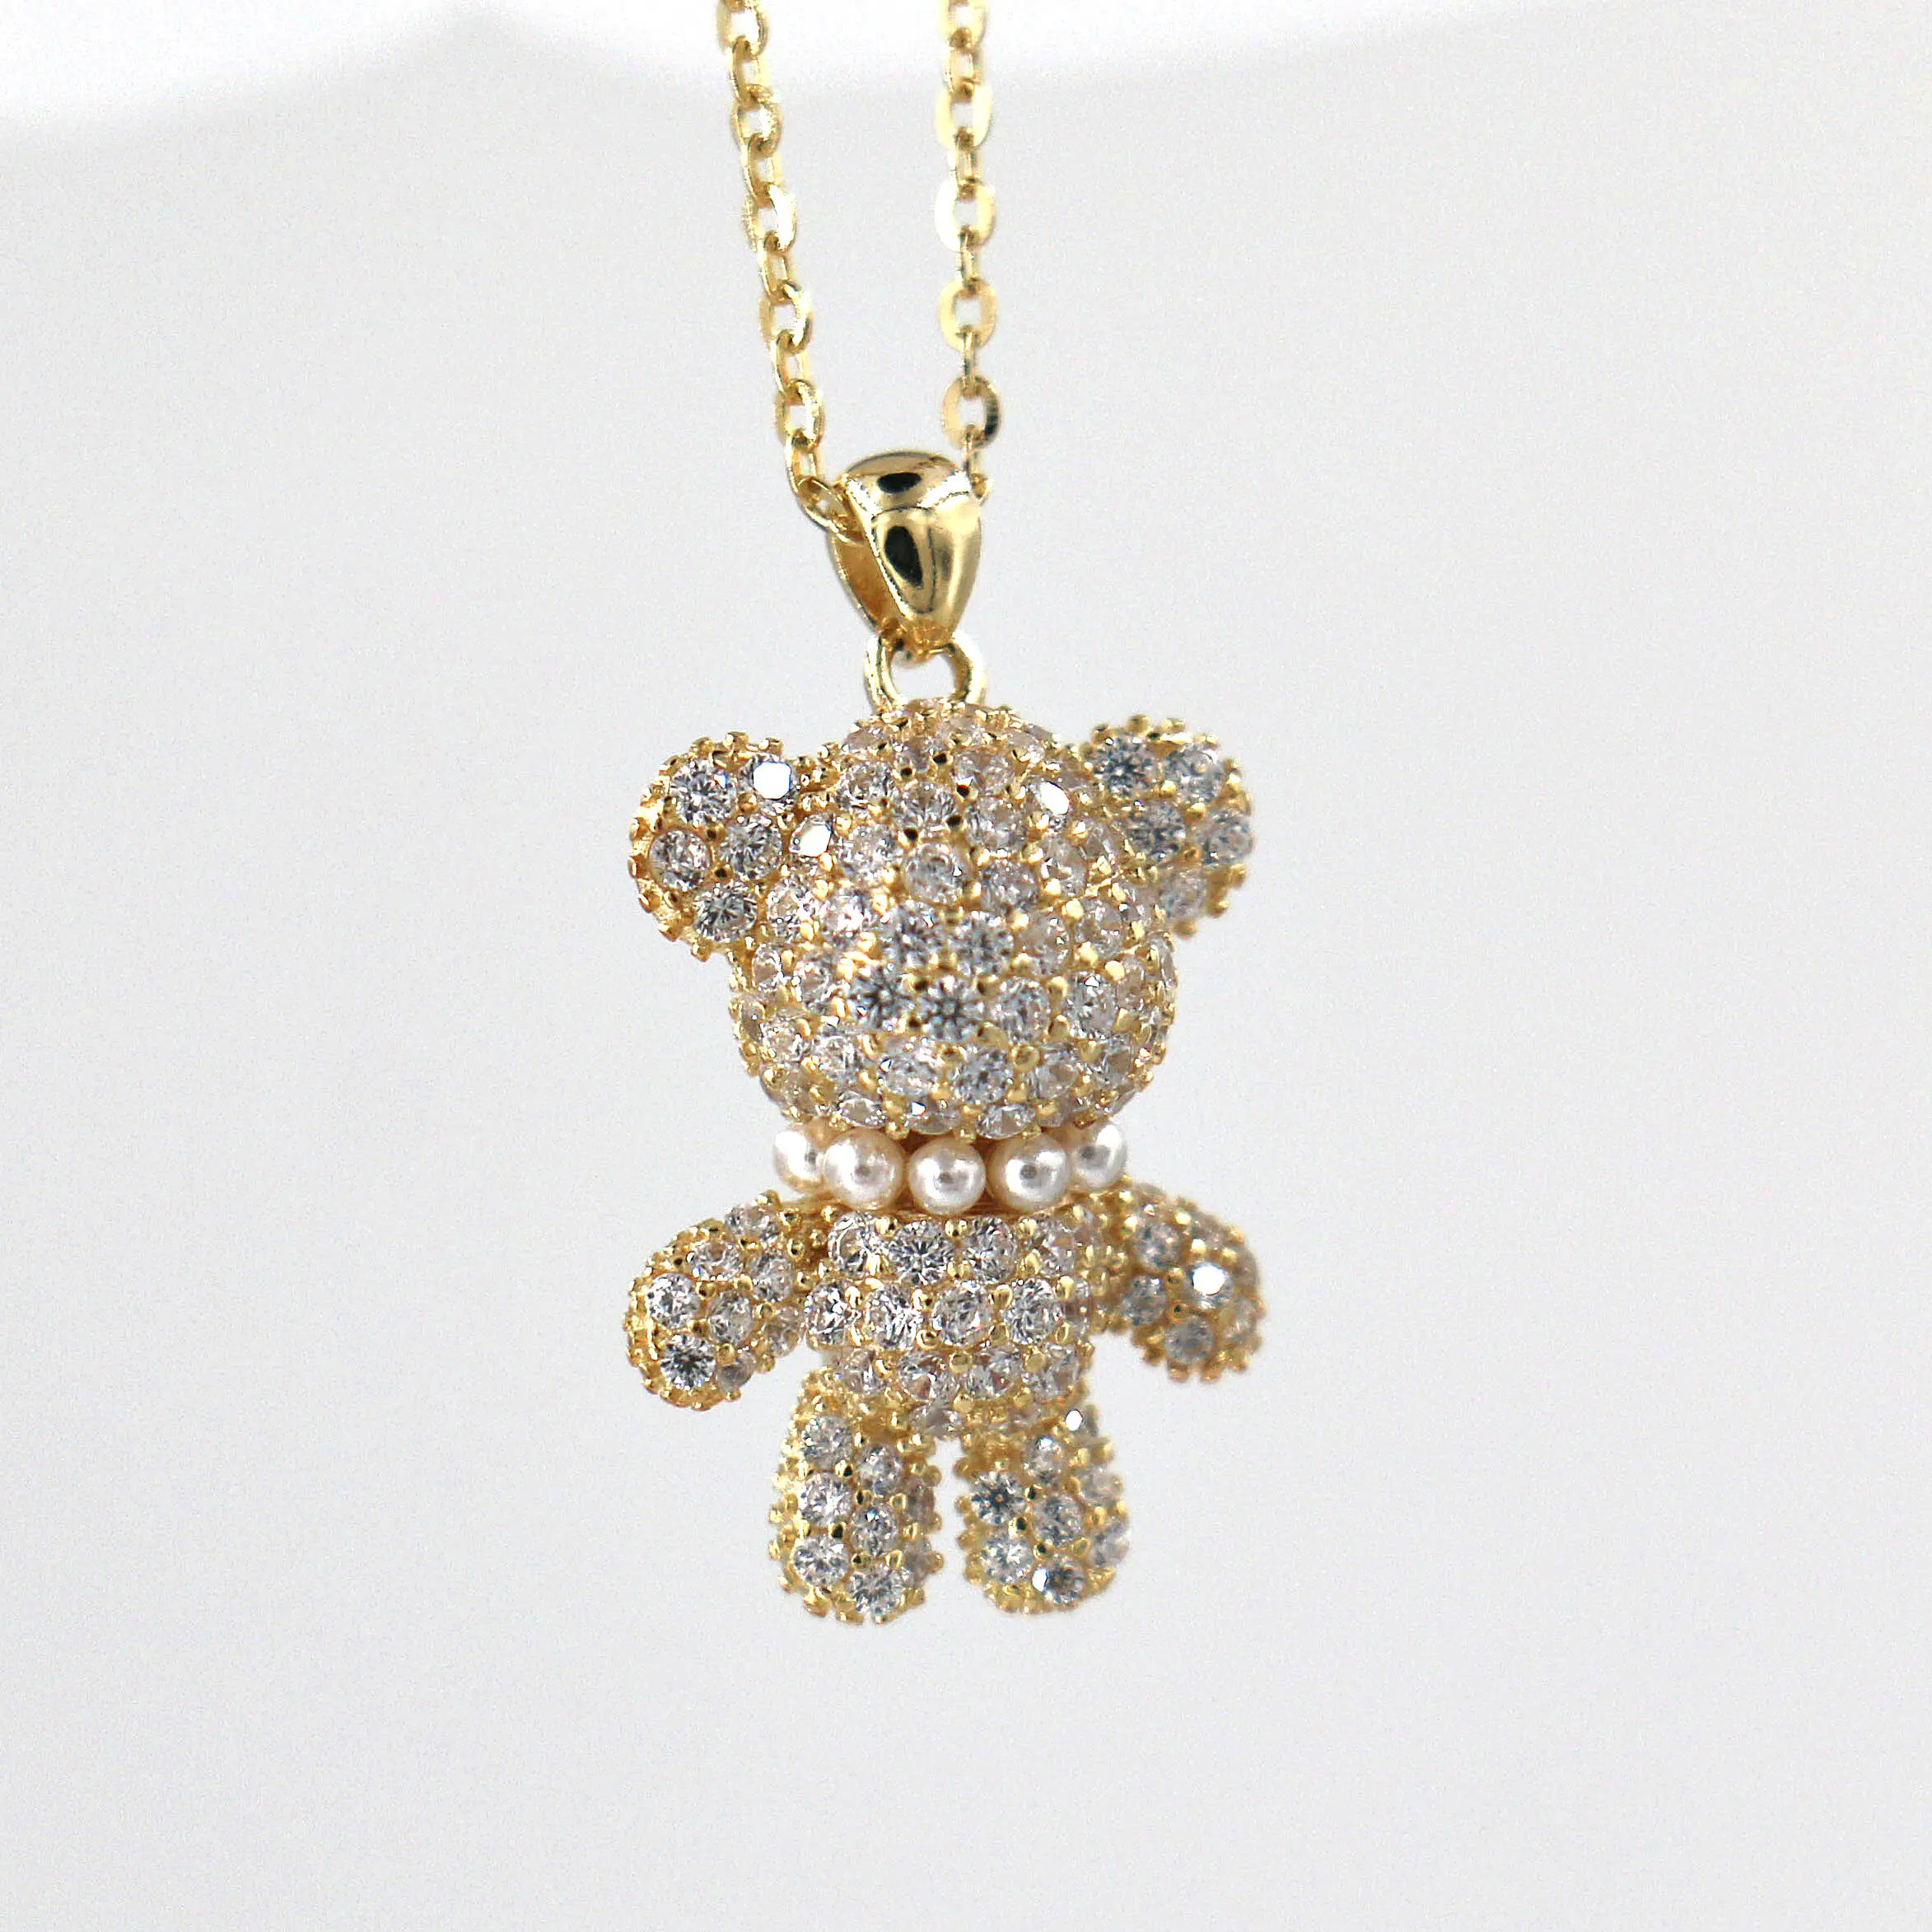 Christmas cute bear zircon S925 silver pendant necklace